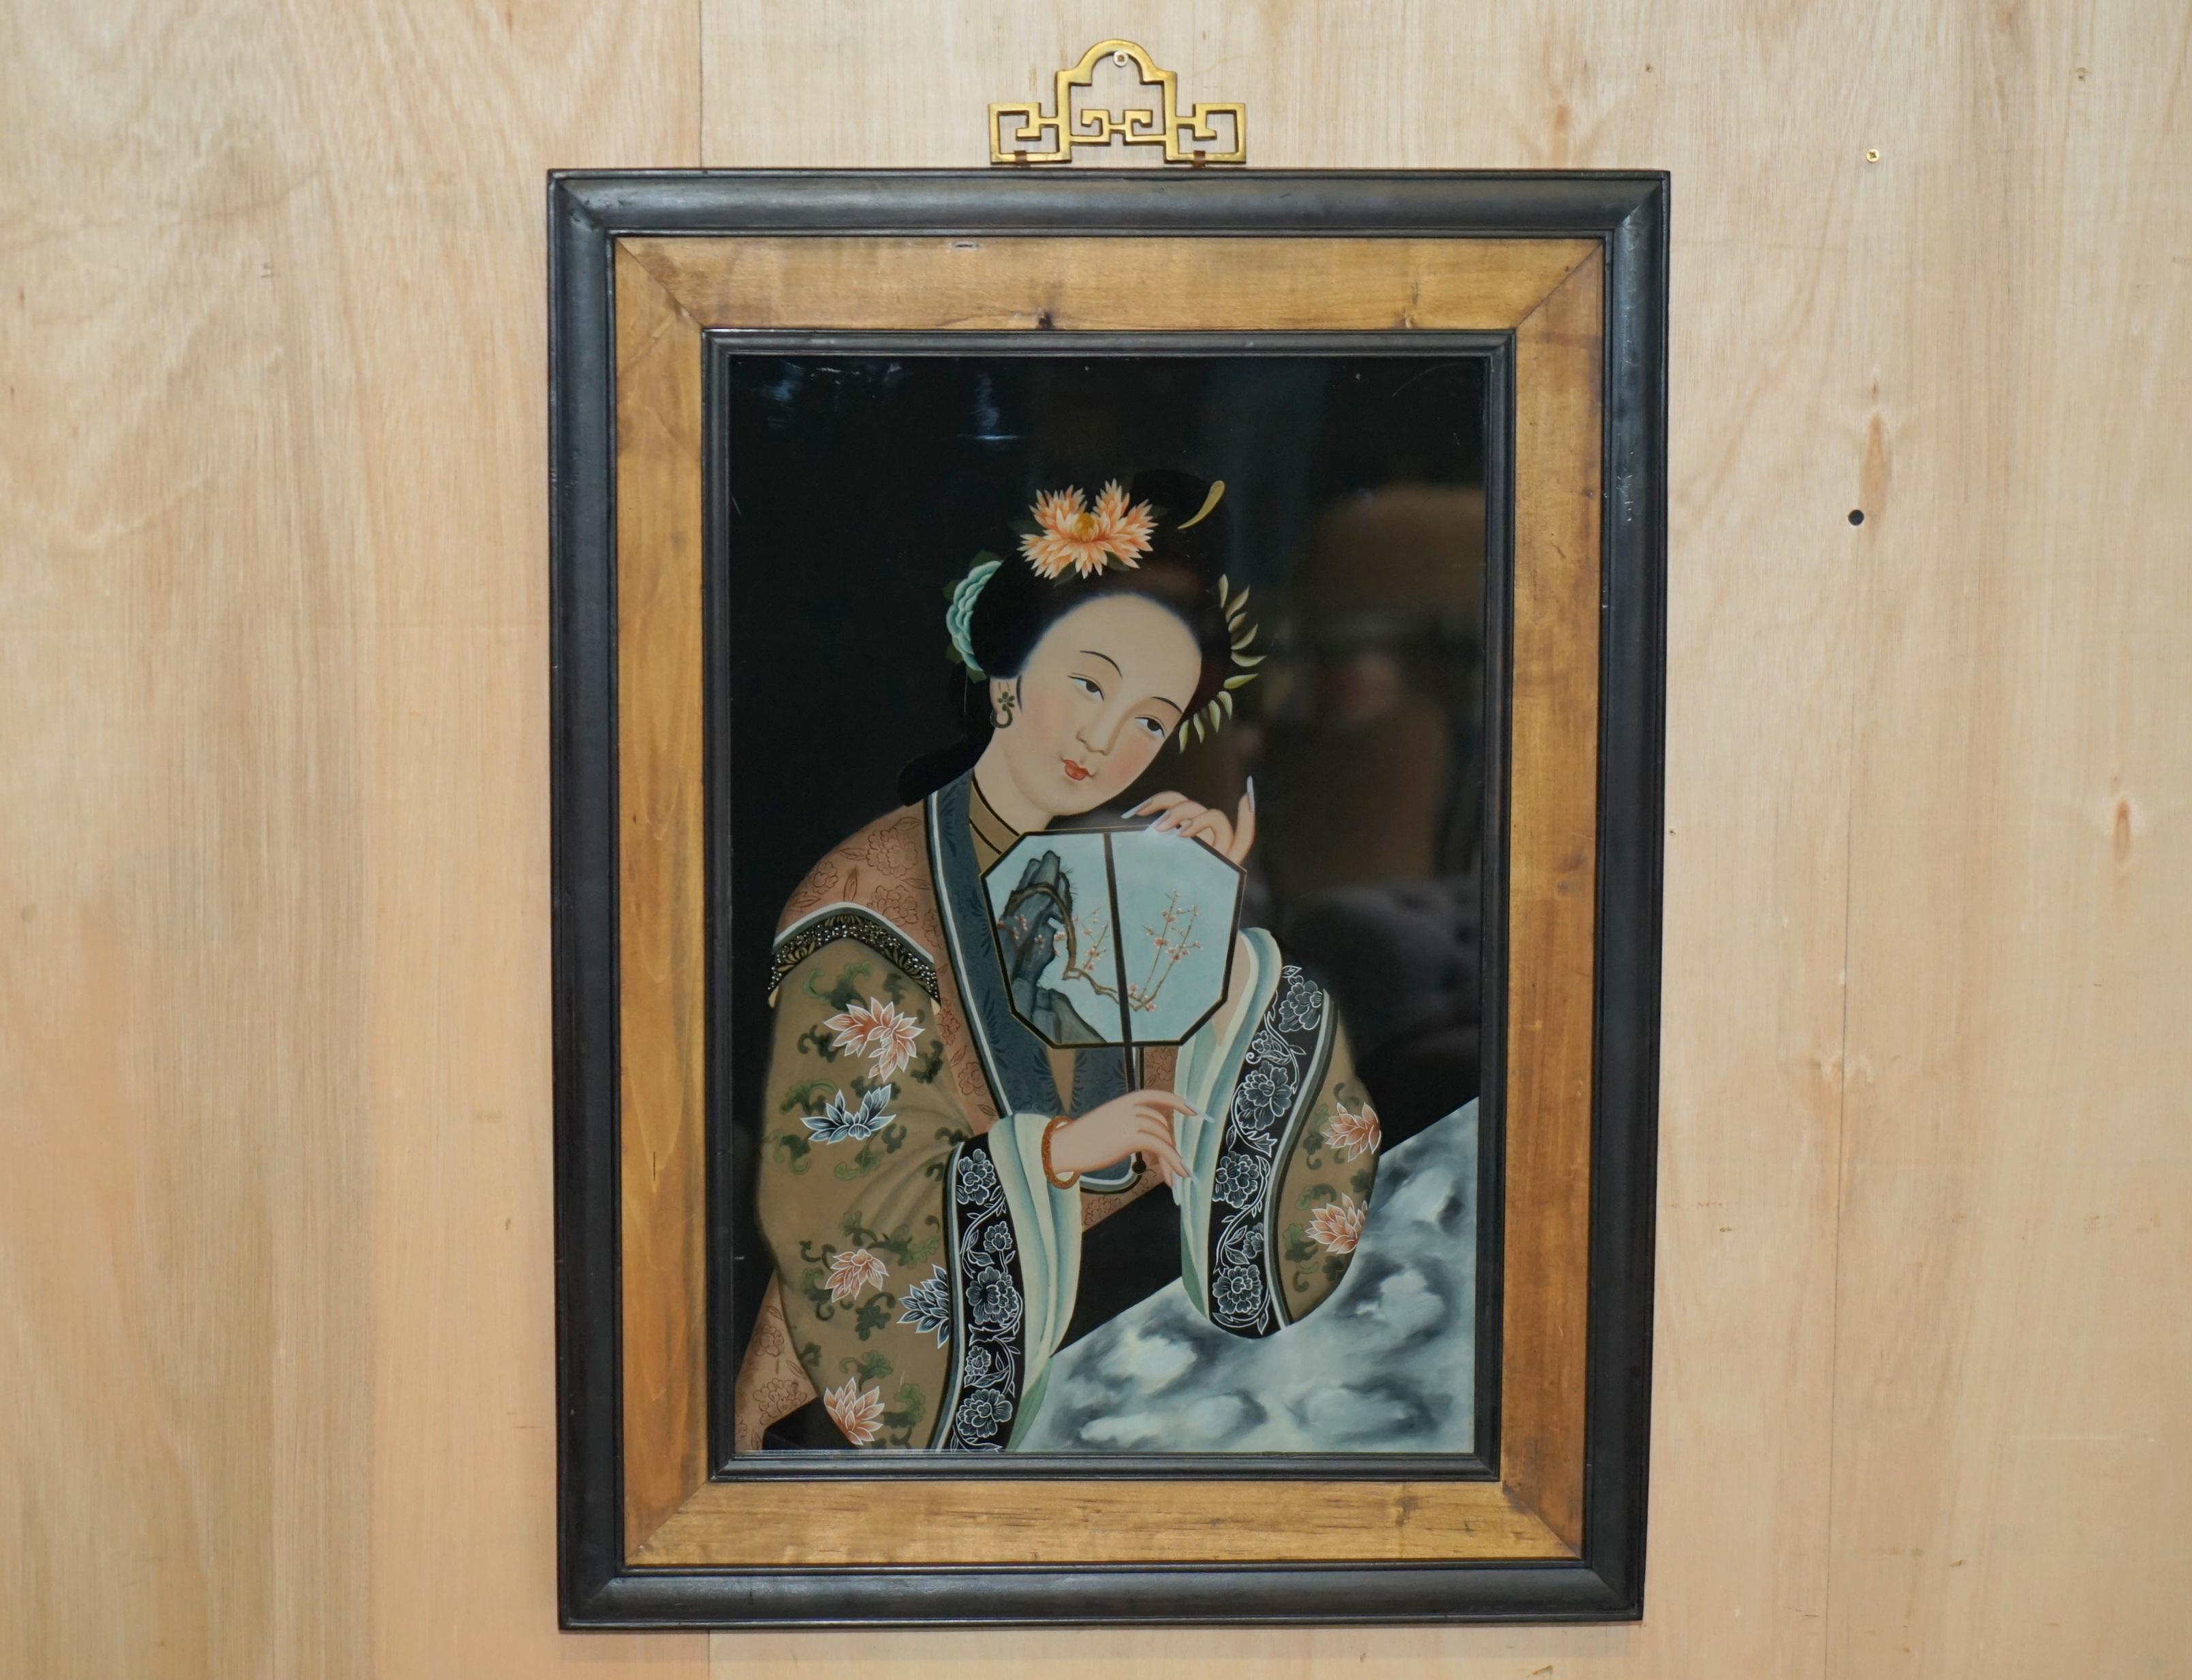 Royal House Antiques

Royal House Antiques freut sich, dieses schöne Paar antiker chinesischer Ahnenporträts zum Verkauf anbieten zu können, die von Hand auf die Rückseite von Glas gemalt worden sind.

Bitte beachten Sie die Lieferkosten aufgeführt